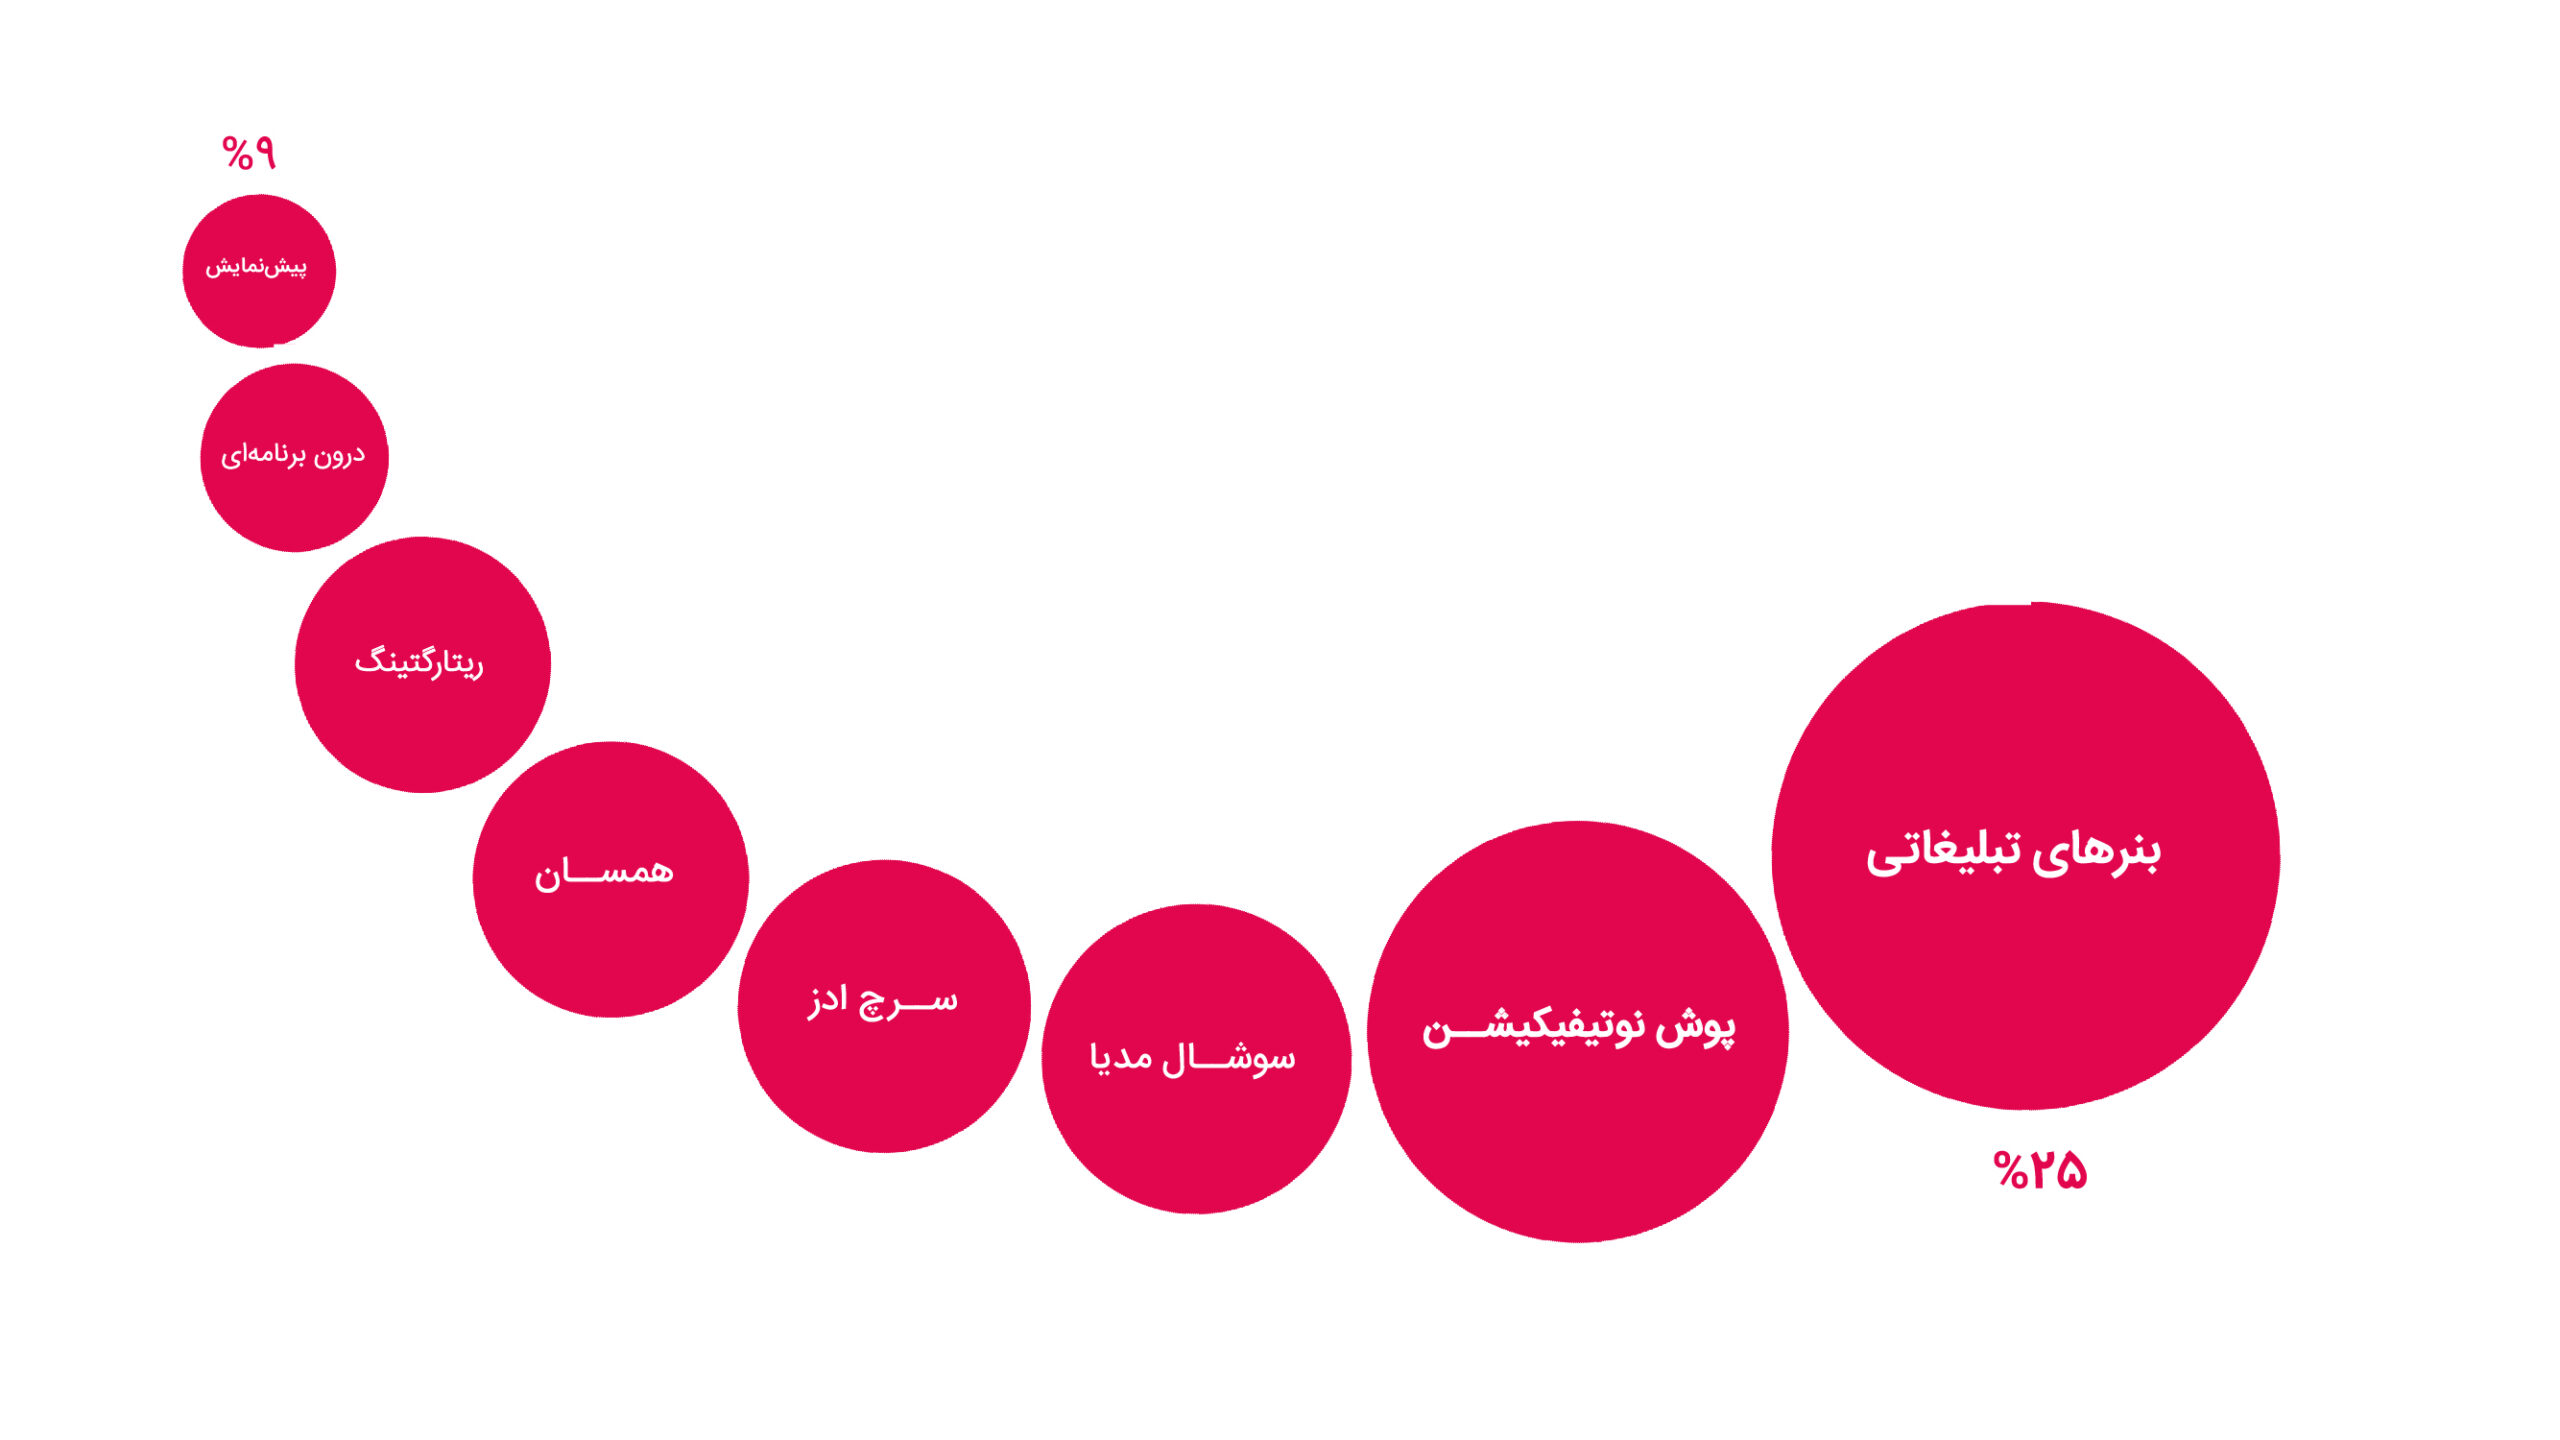 ۲۵ درصد سشن‌های تبلیغات آنلاین در ایران تقلبی‌ست؛ گزارش تقلب در تبلیغات آنلاین از دژینو 6